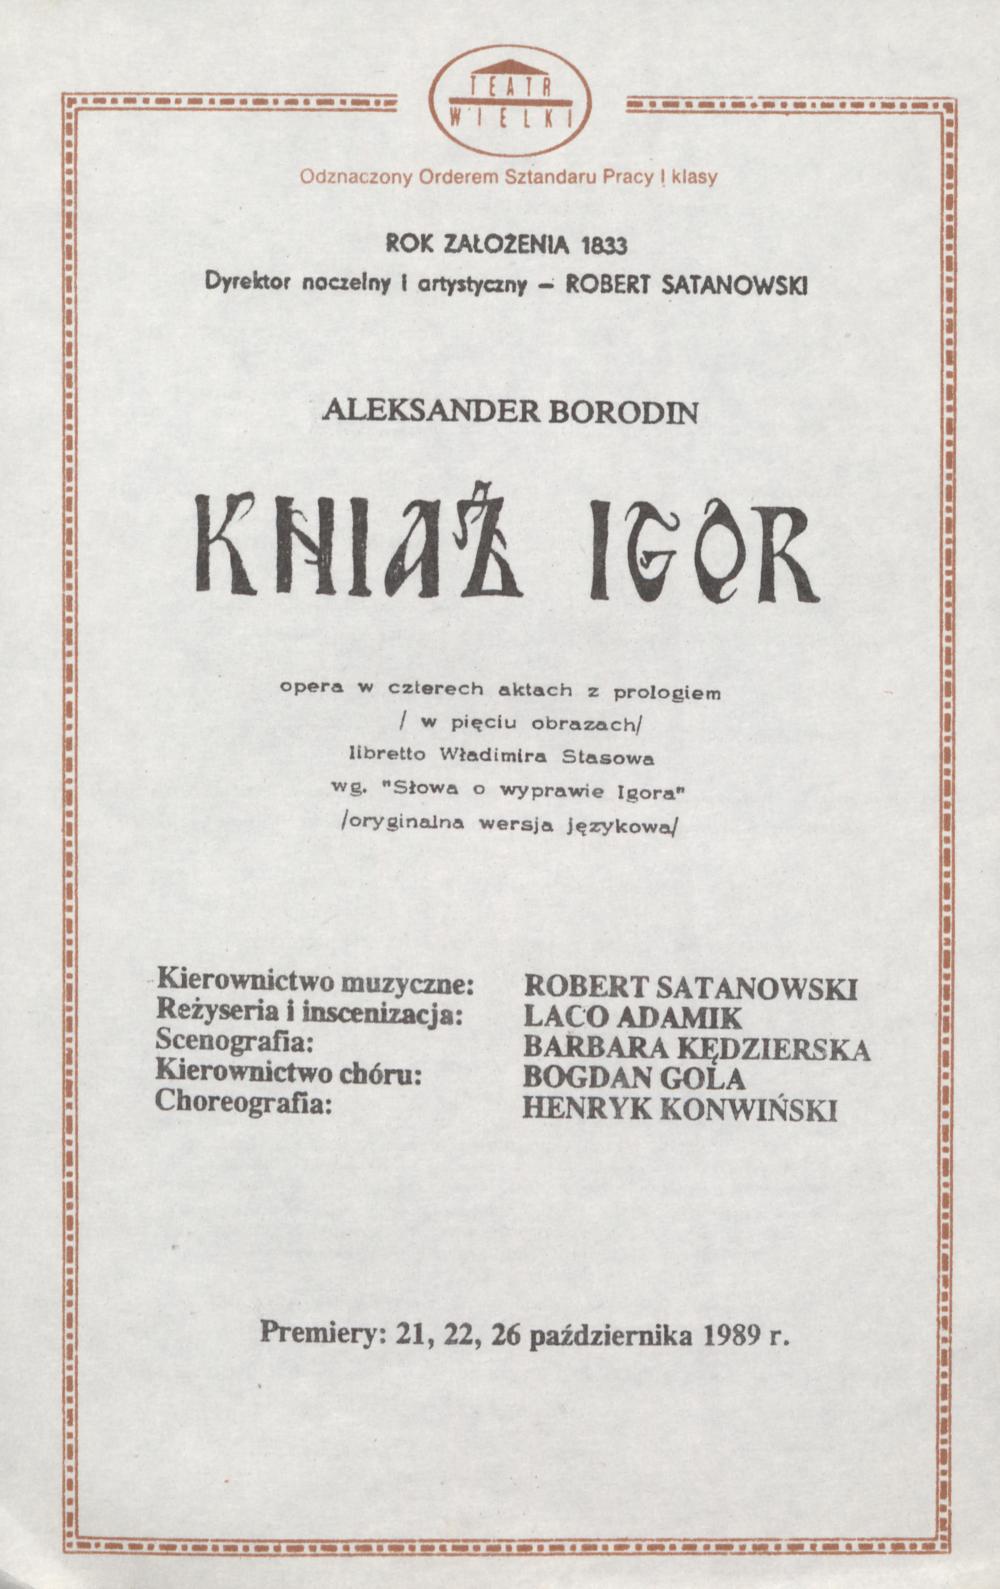 Wkładka obsadowa „Kniaź Igor” Aleksander Borodin 24-10-1989